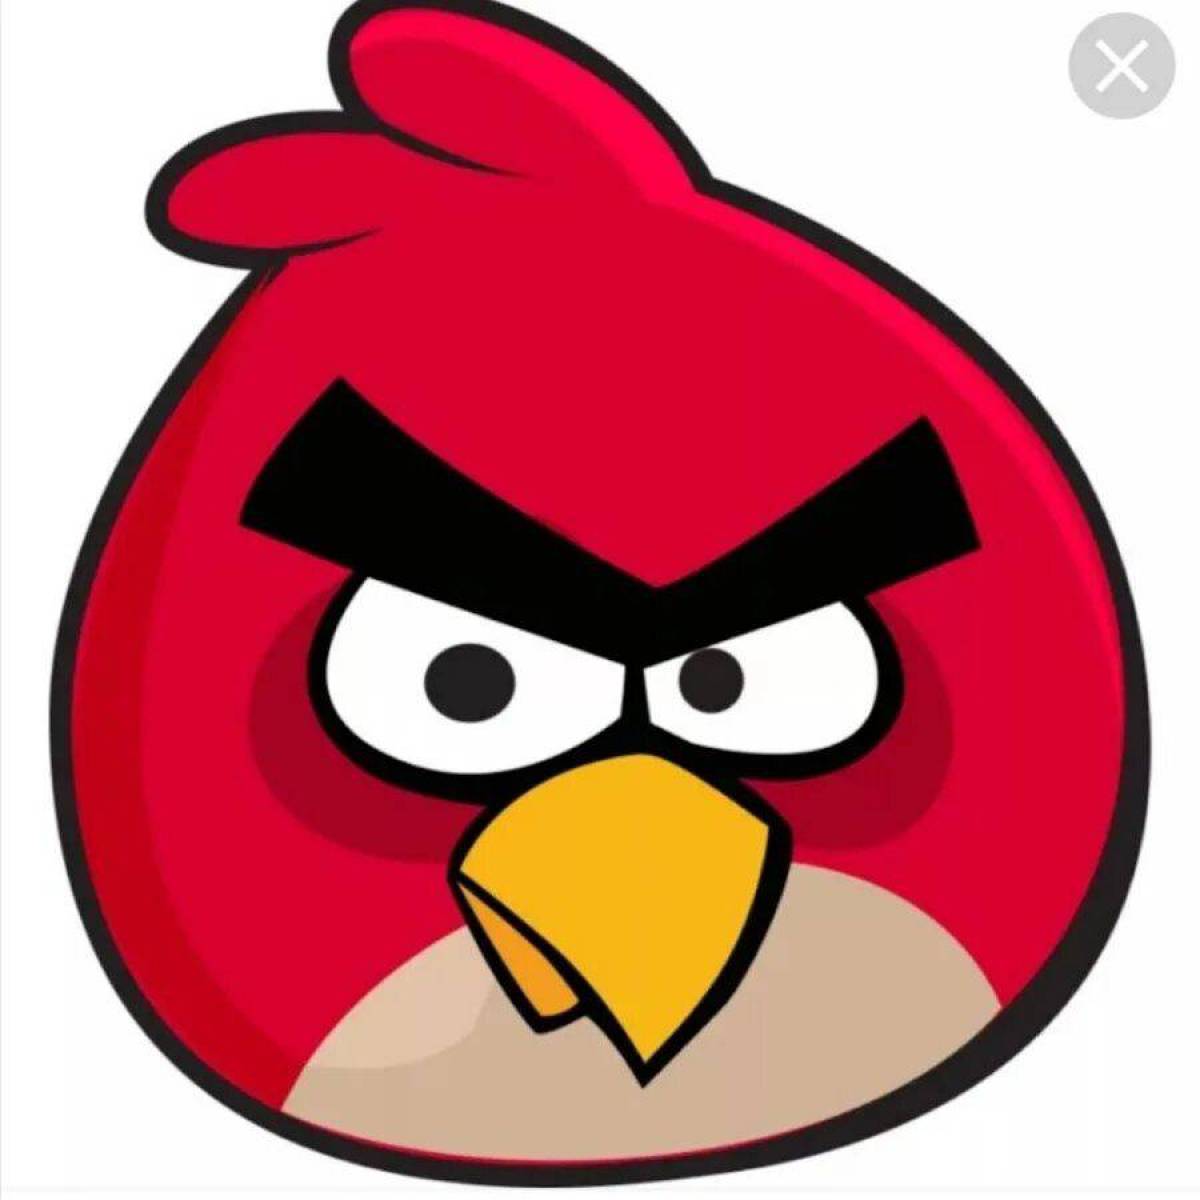 Обнови angry birds. Angry Birds злые птички. Энгри бердз красная птица. Ангрибёрдс злые птенчики. Энгри бердз красная птица злая.